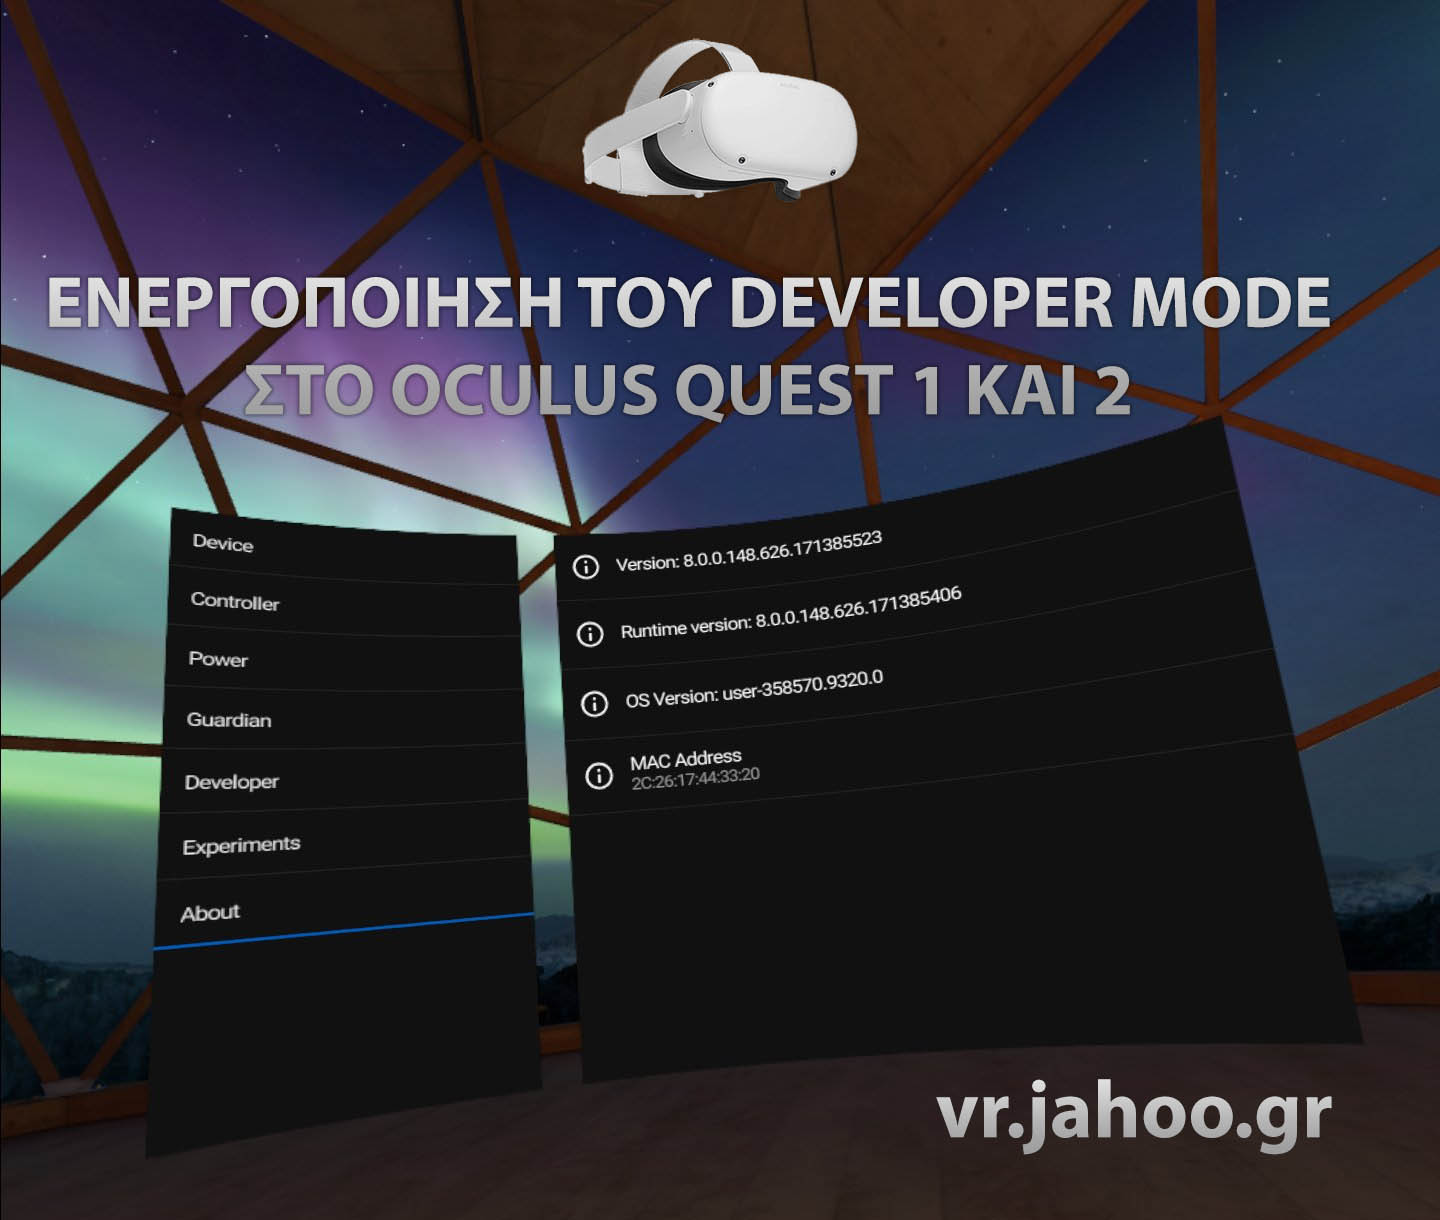 Πως ενεργοποιώ το developer στο Oculus ?